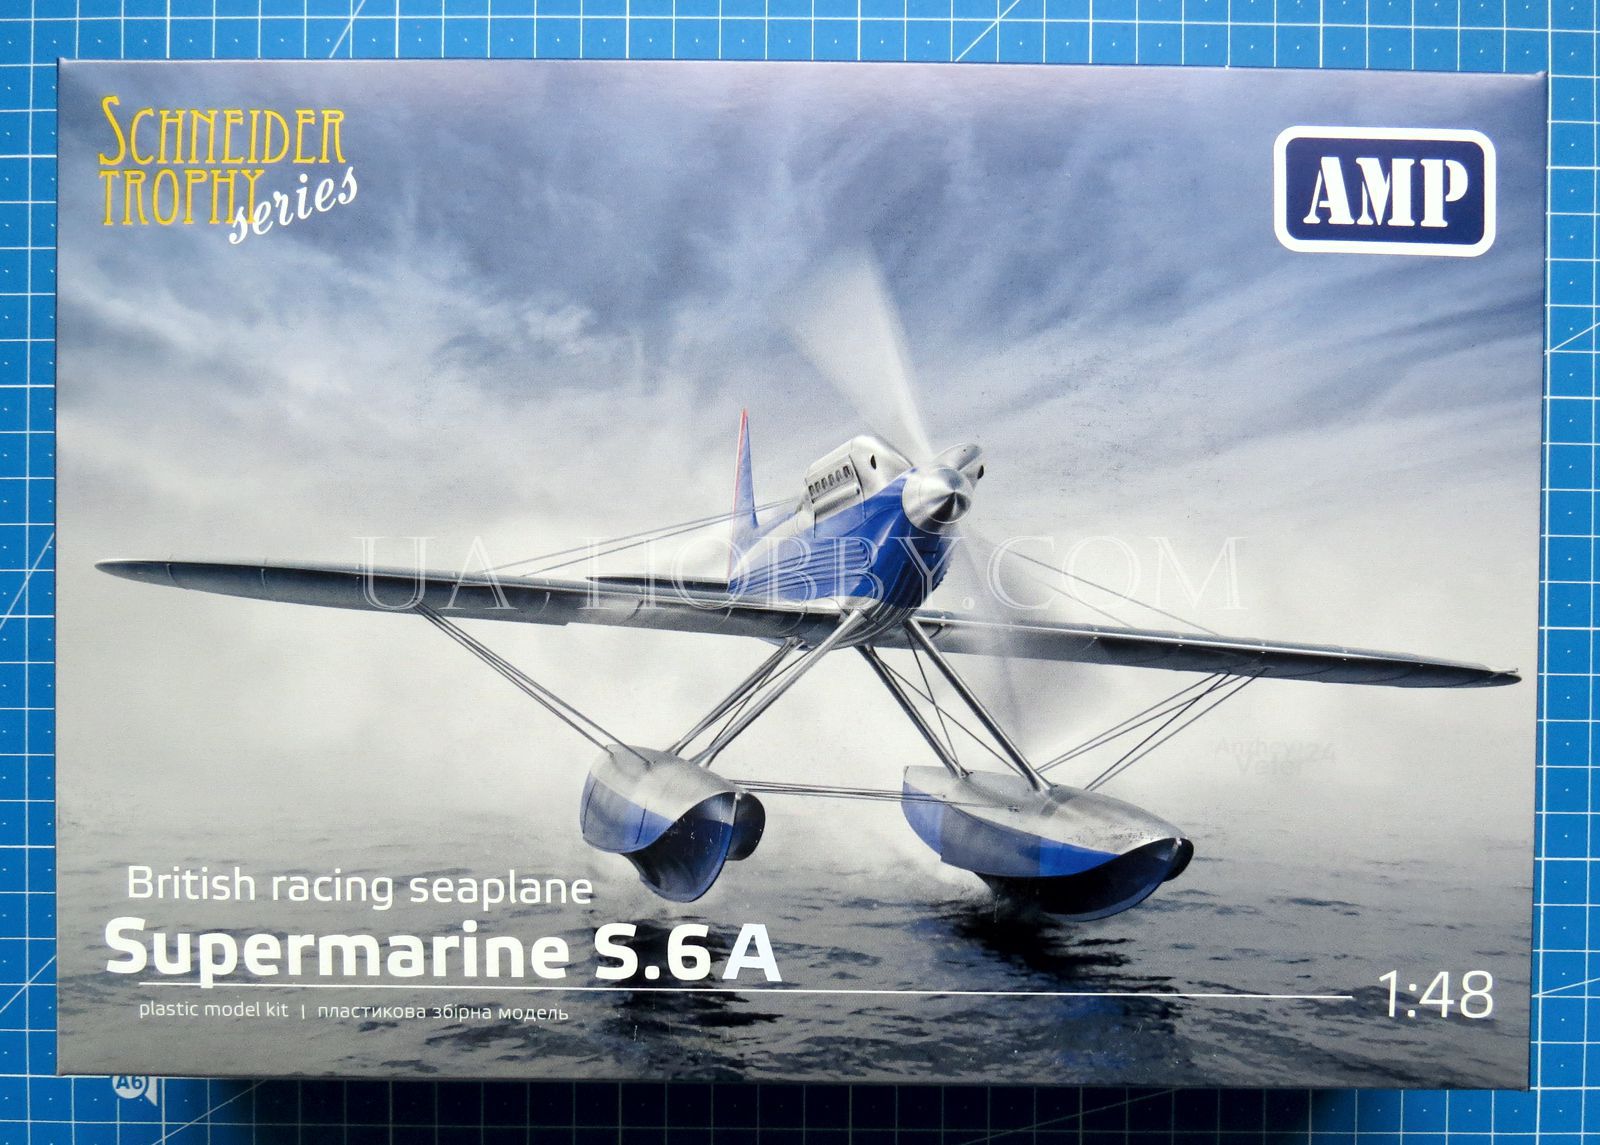 1/48 Supermarine S.6A Schneider Trophy Series. AMP 48026